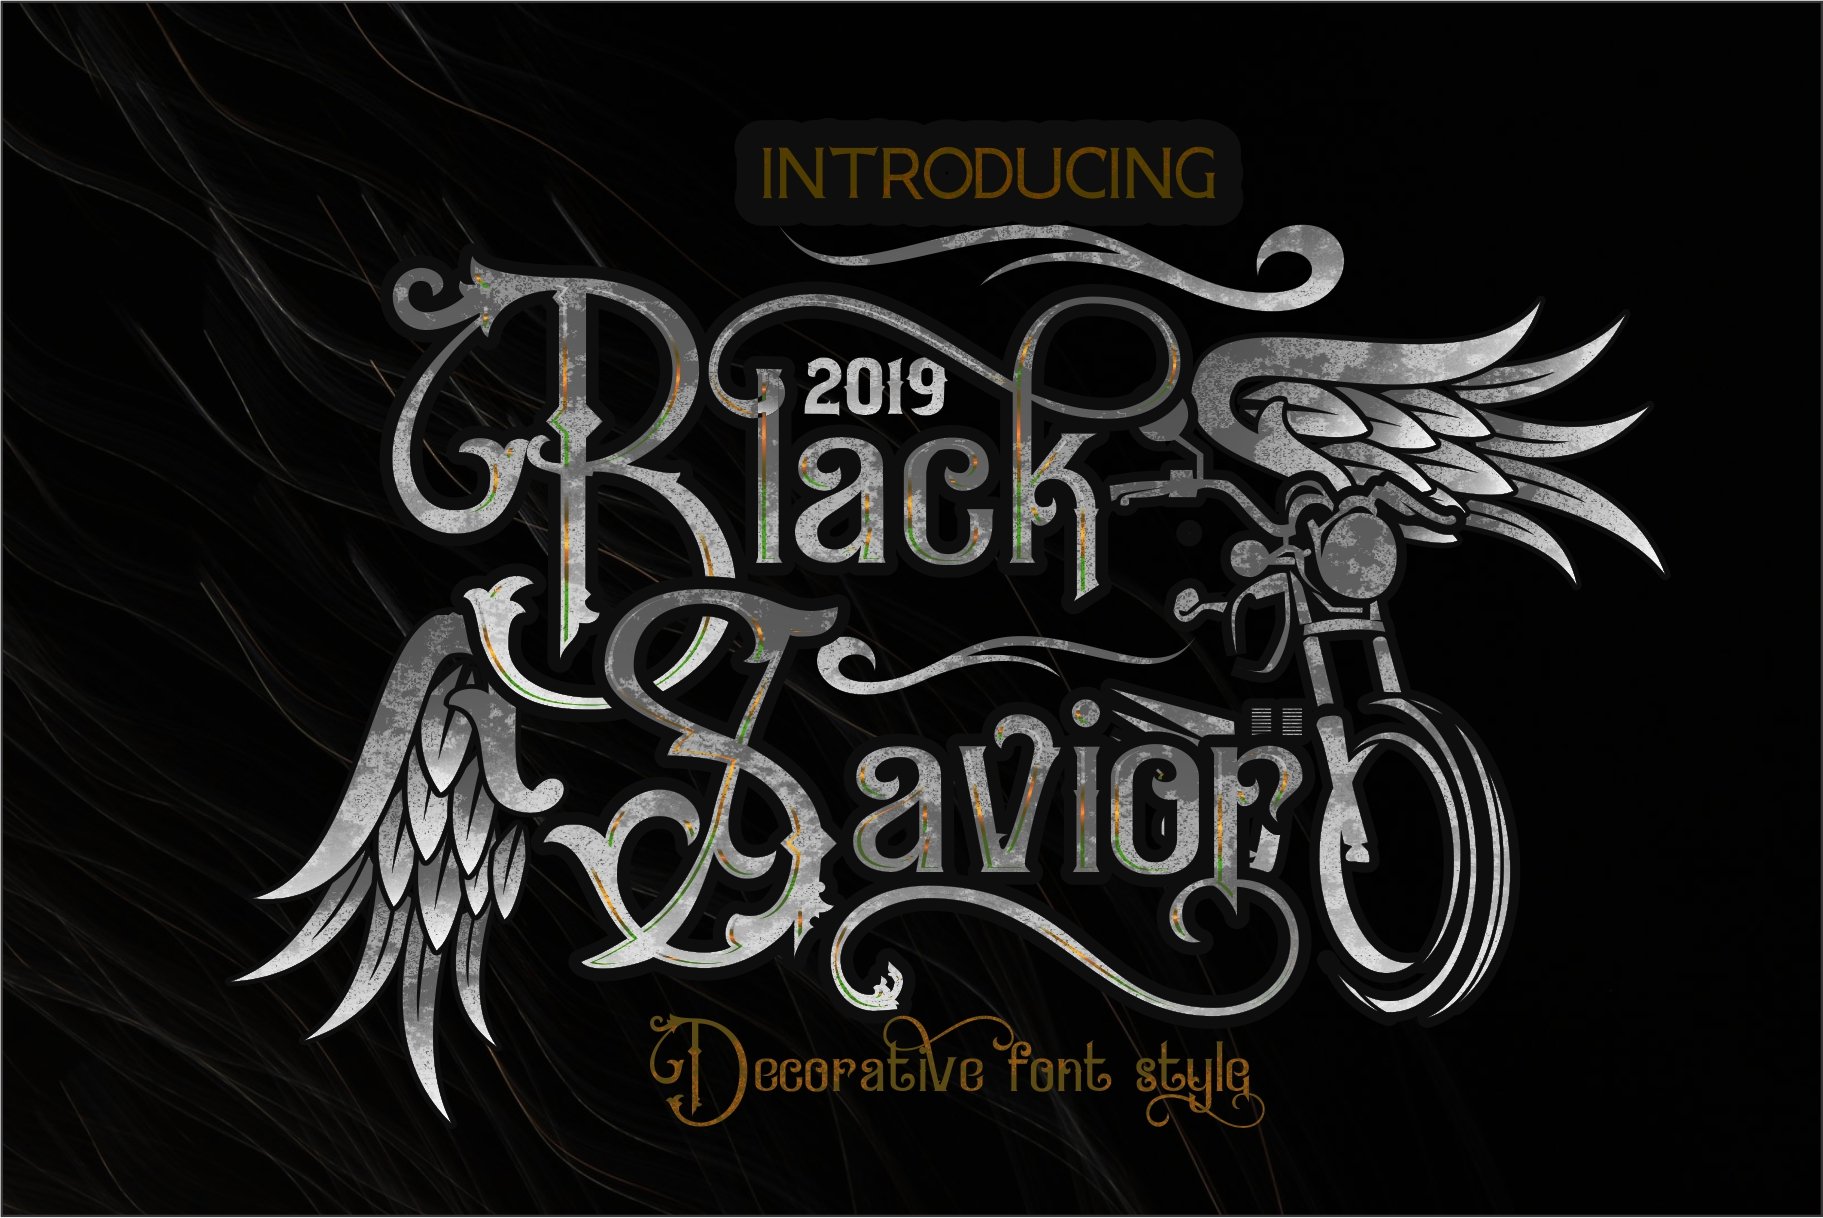 Black Savior Victorian retro Font cover image.